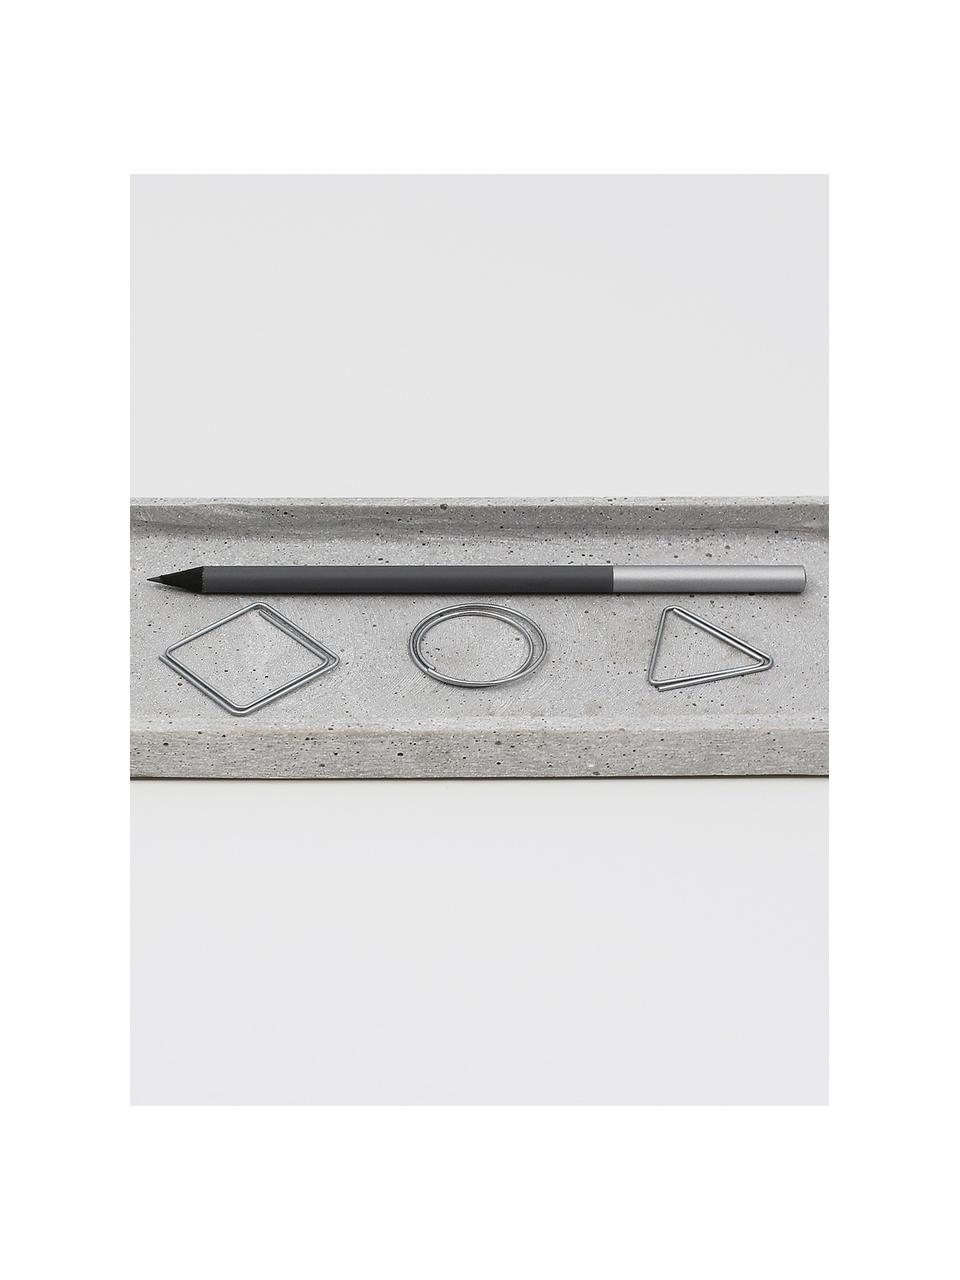 Büroklammern-Set Geometria, 9-tlg., Metall, lackiert, Metall, 3 x 3 cm